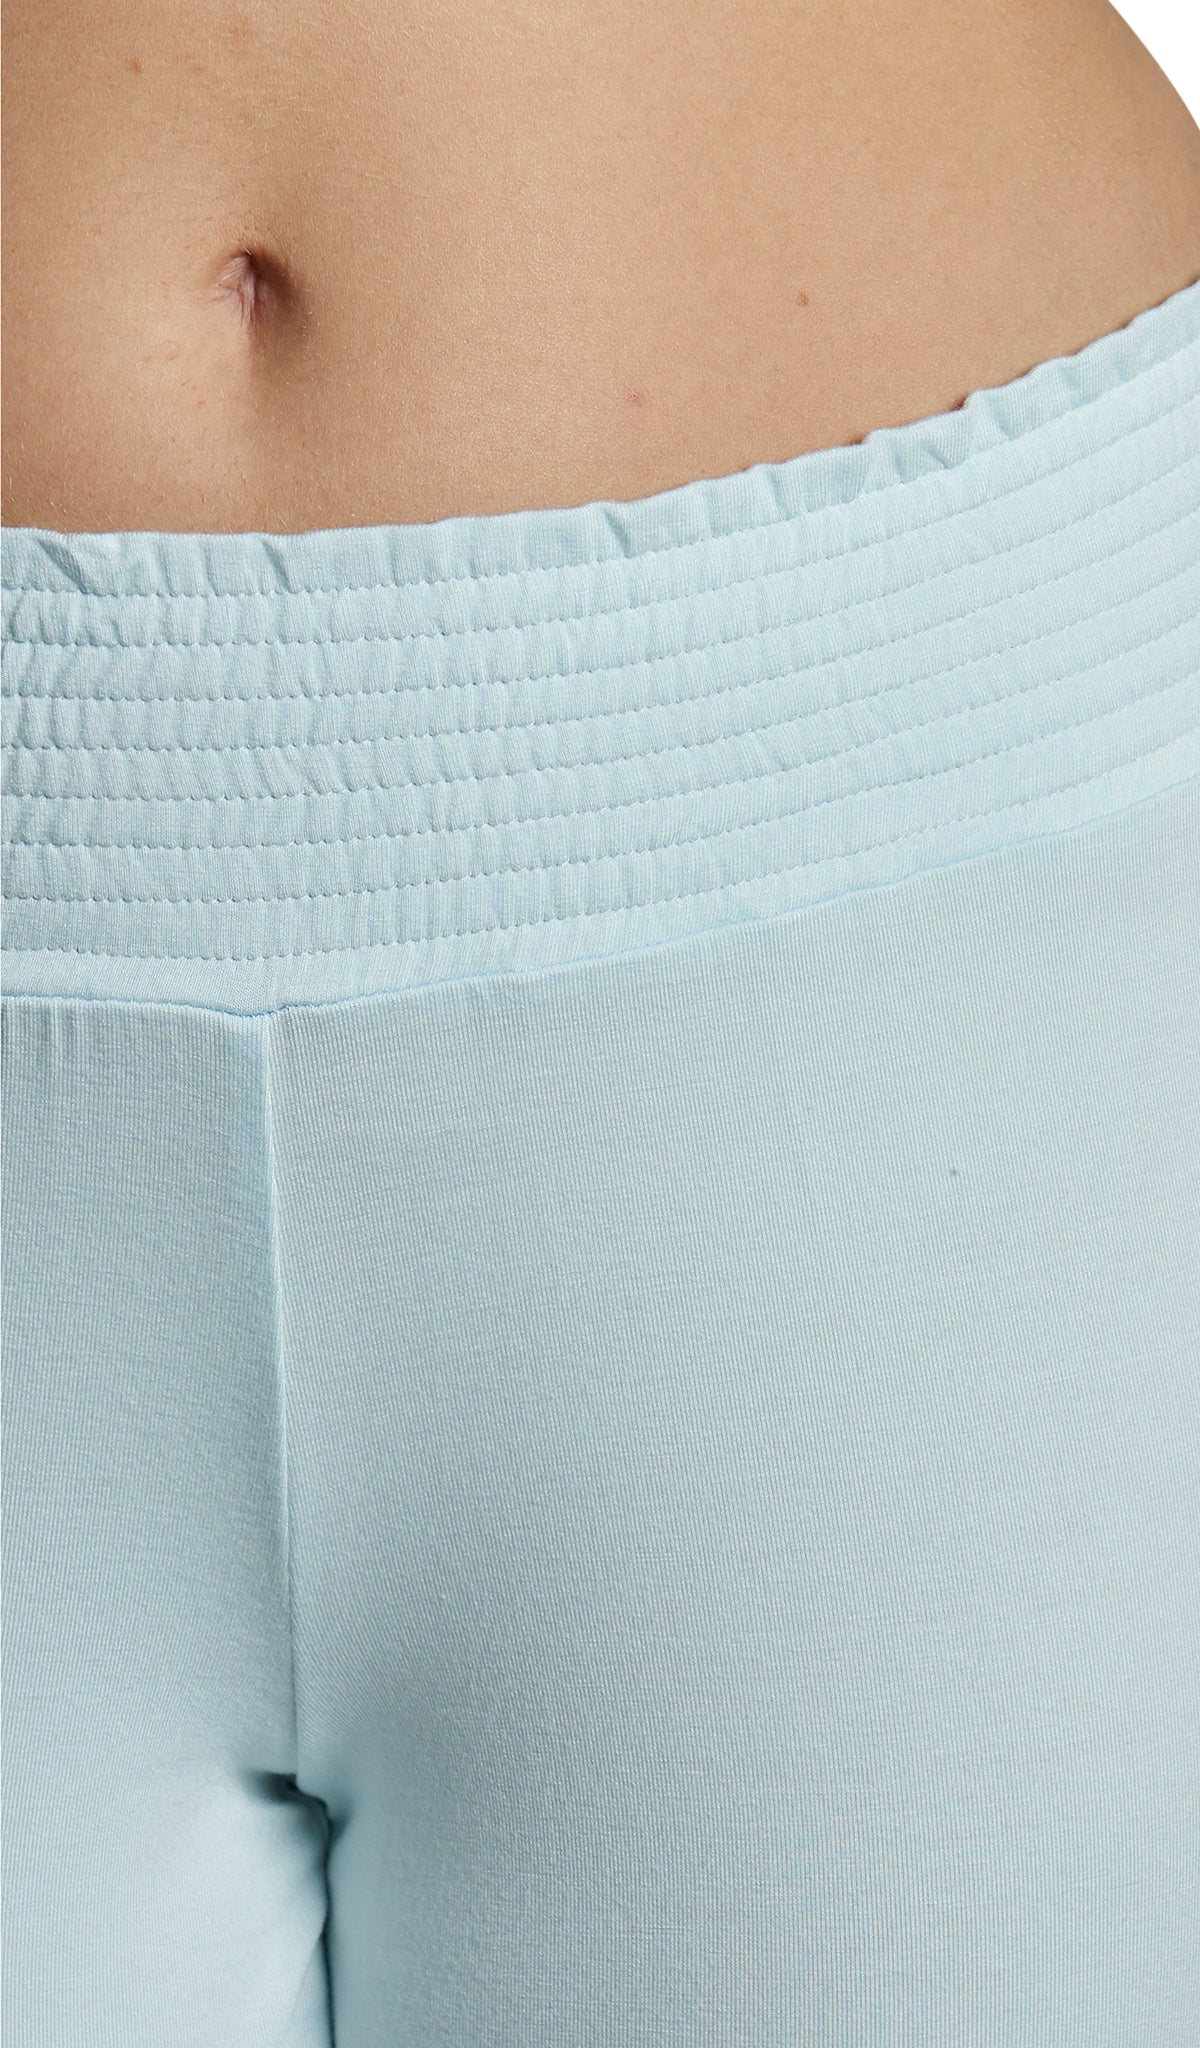 Whispering Blue Analise 5-Piece Set, detailed shot of smocked elastic waistband.